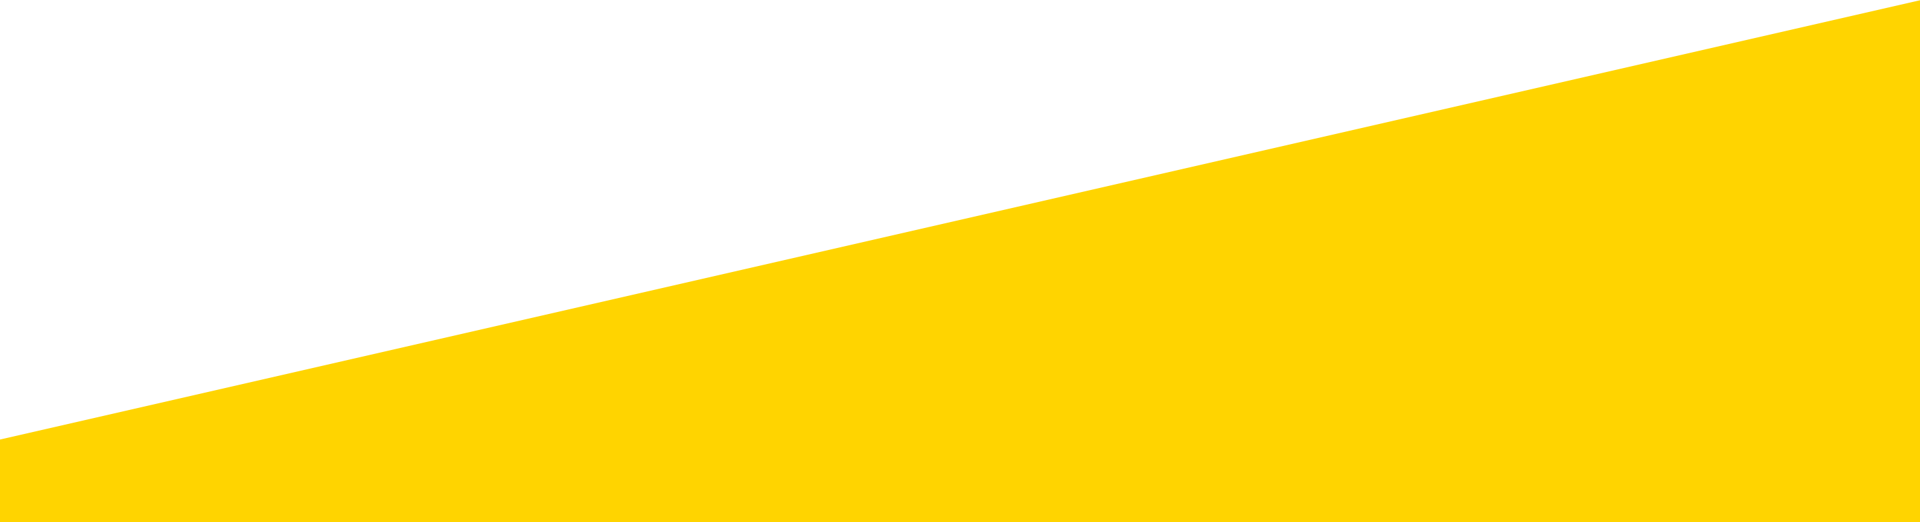 yellow slanted corner shape